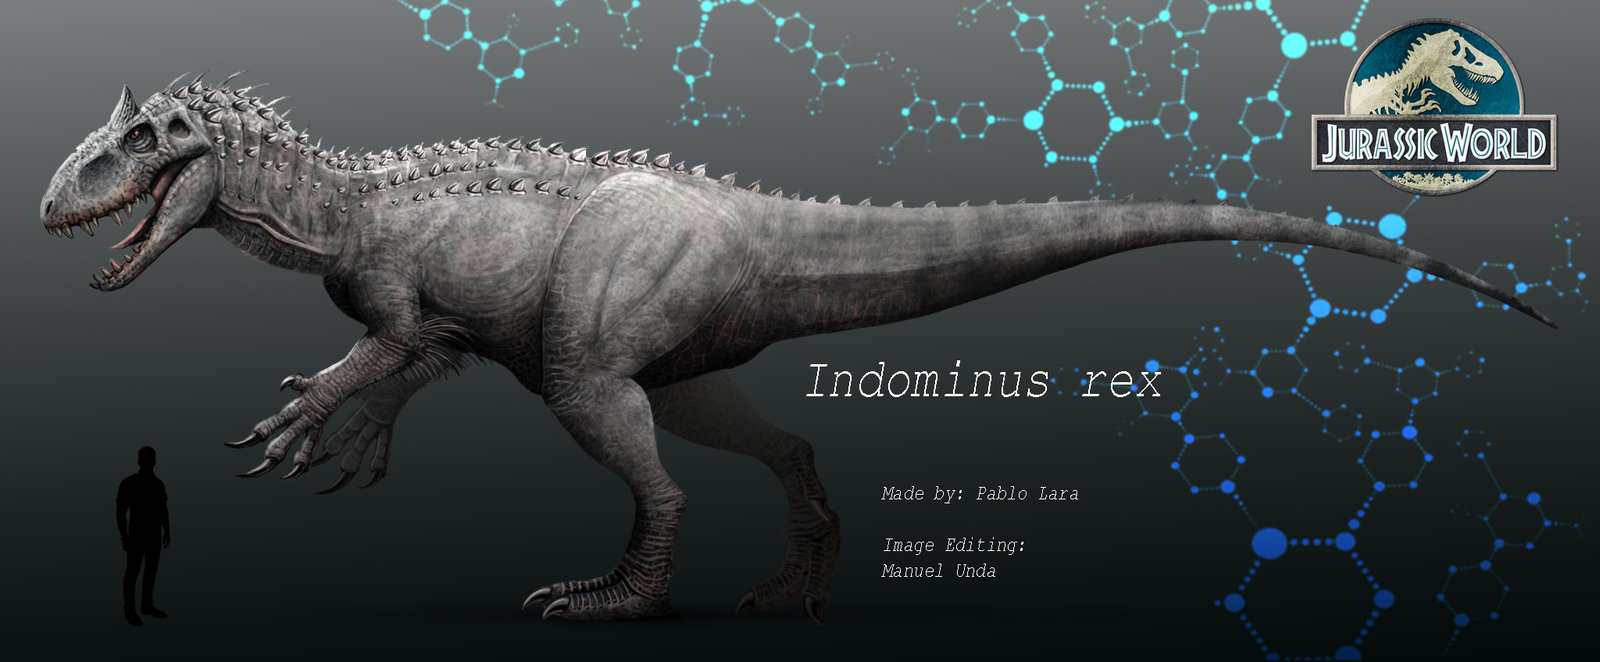 Indominus Rex vs. Spinosaurus (Jurassic World spoilers) : whowouldwin